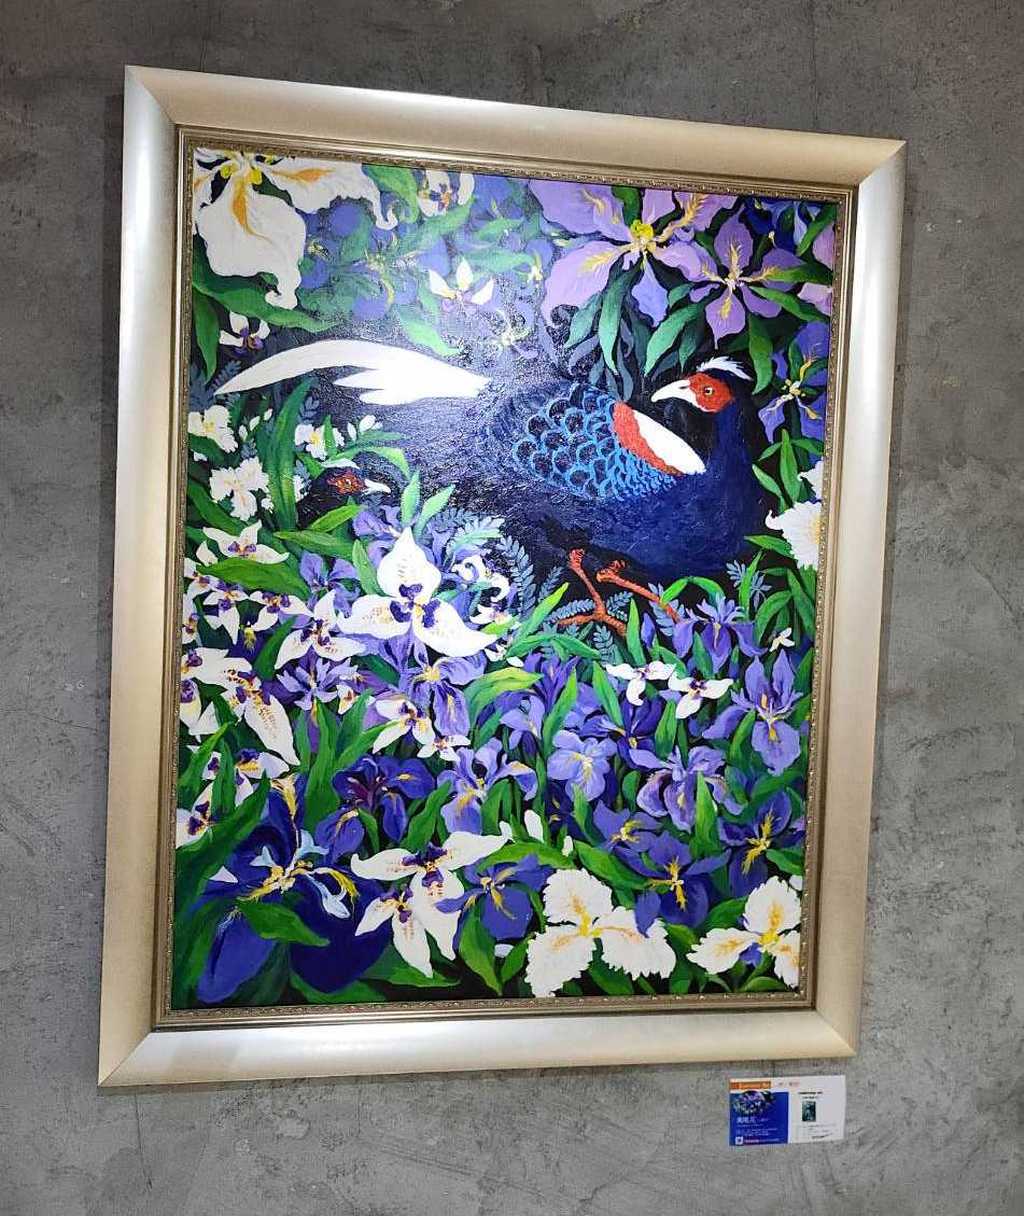 貴氣畫家劉麗芬的鳶尾花系列作品中的國寶鳥藍腹鷼，這是會場中非常吸睛的一件作品吸引非常多的貴賓留影收藏。圖/藝術家劉麗芬 Li-Fen Liu /Josephine提供